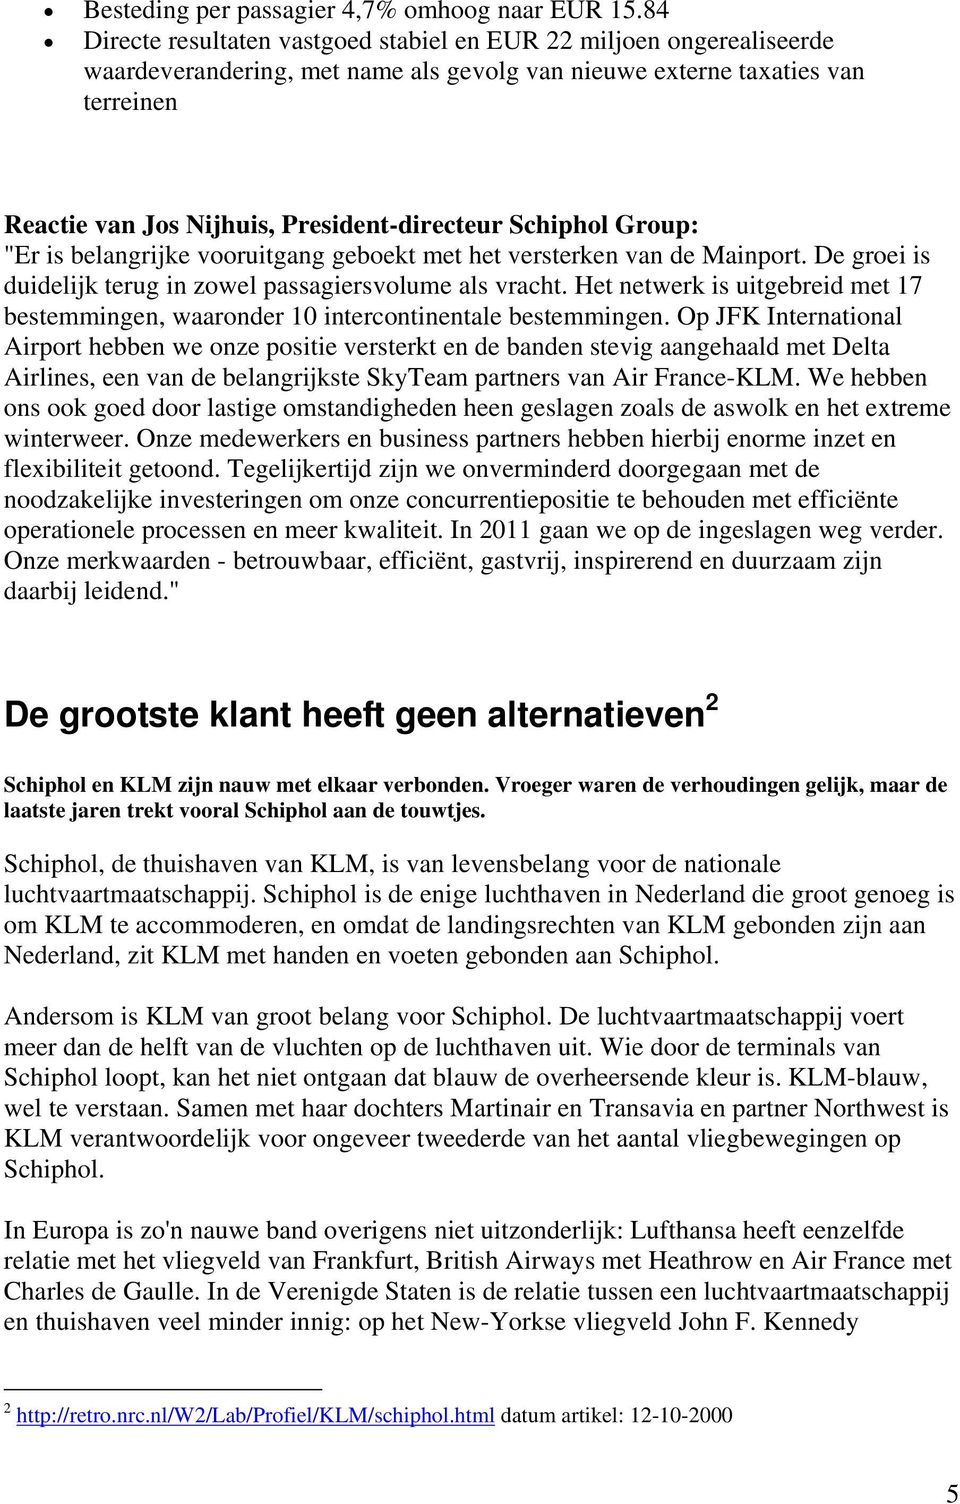 Schiphol Group: "Er is belangrijke vooruitgang geboekt met het versterken van de Mainport. De groei is duidelijk terug in zowel passagiersvolume als vracht.